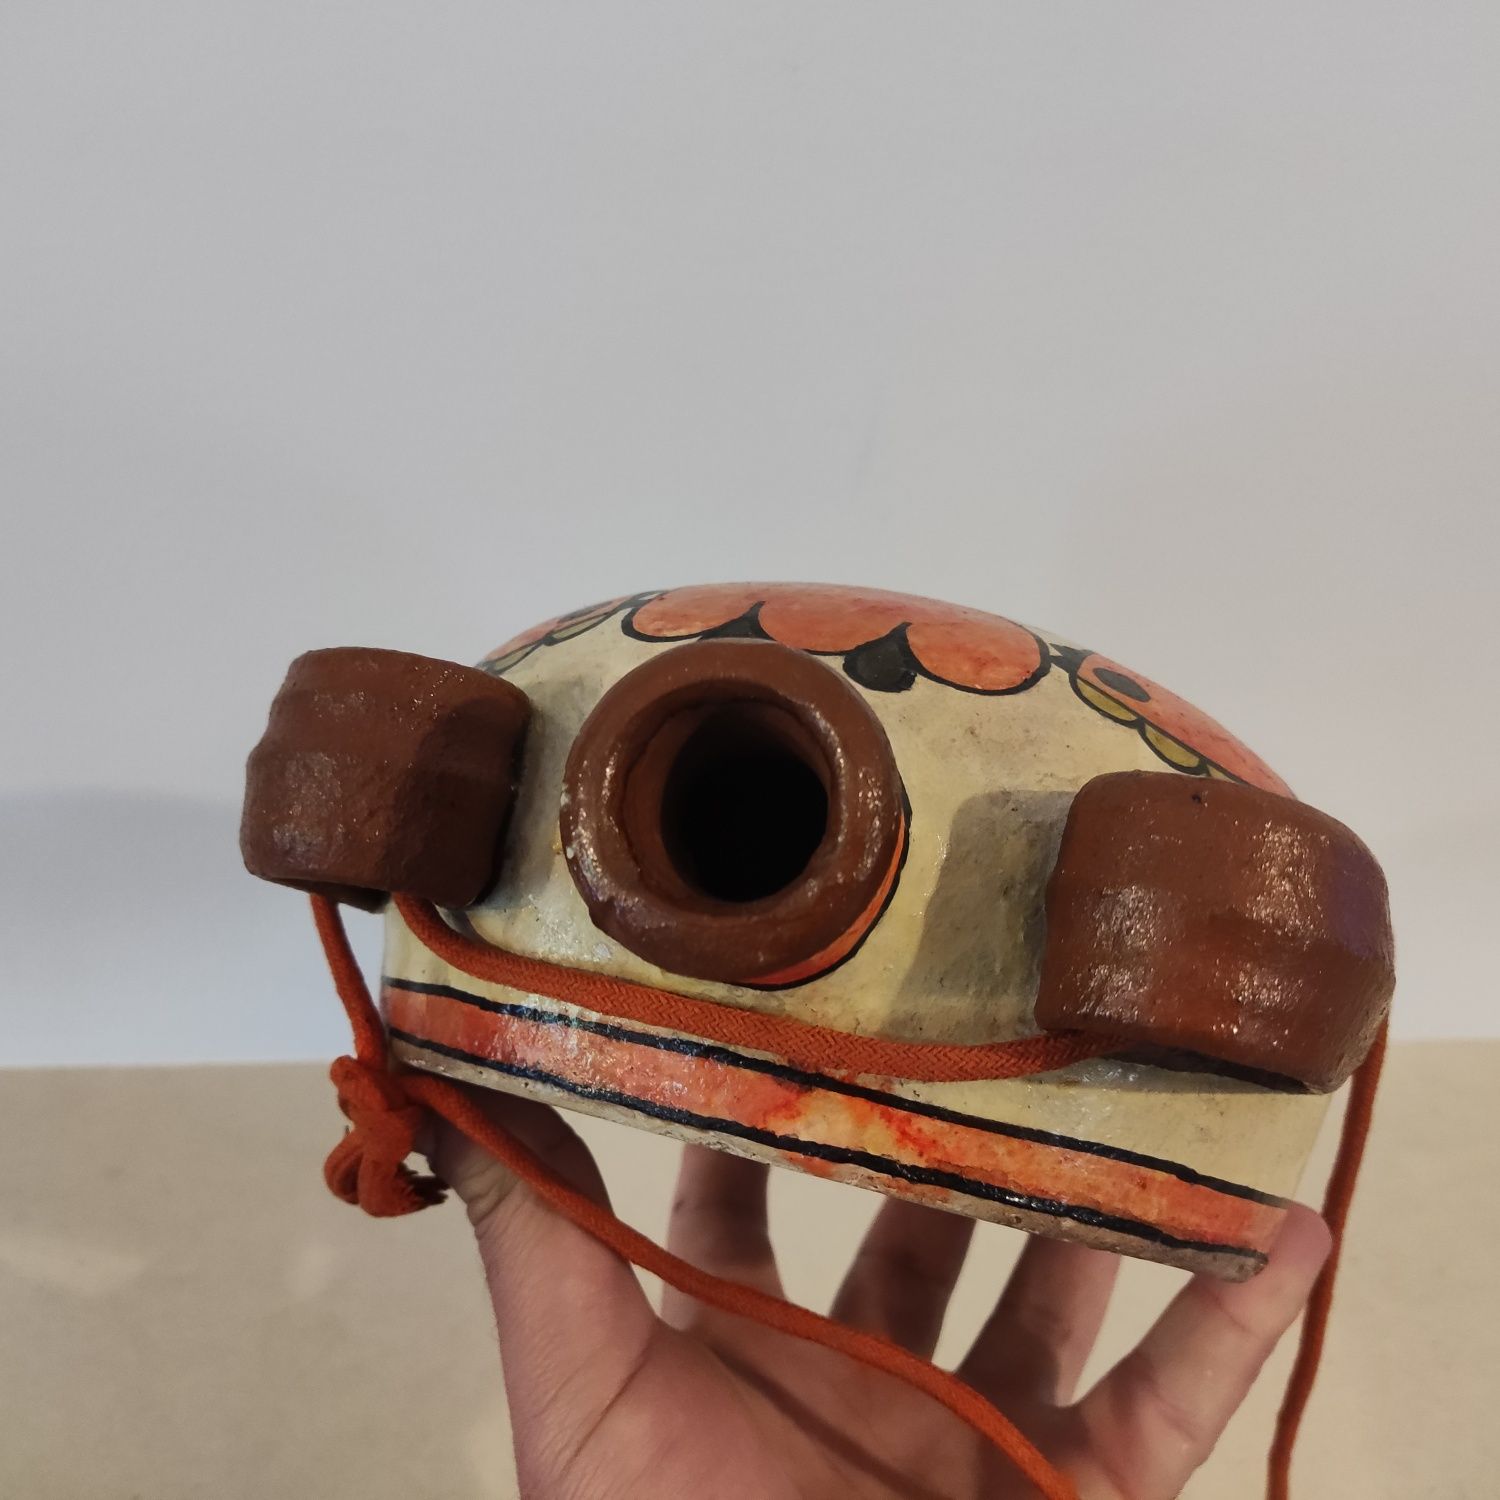 "Carmo Saude" Garrafa cerâmica antiga com motivos - vintage